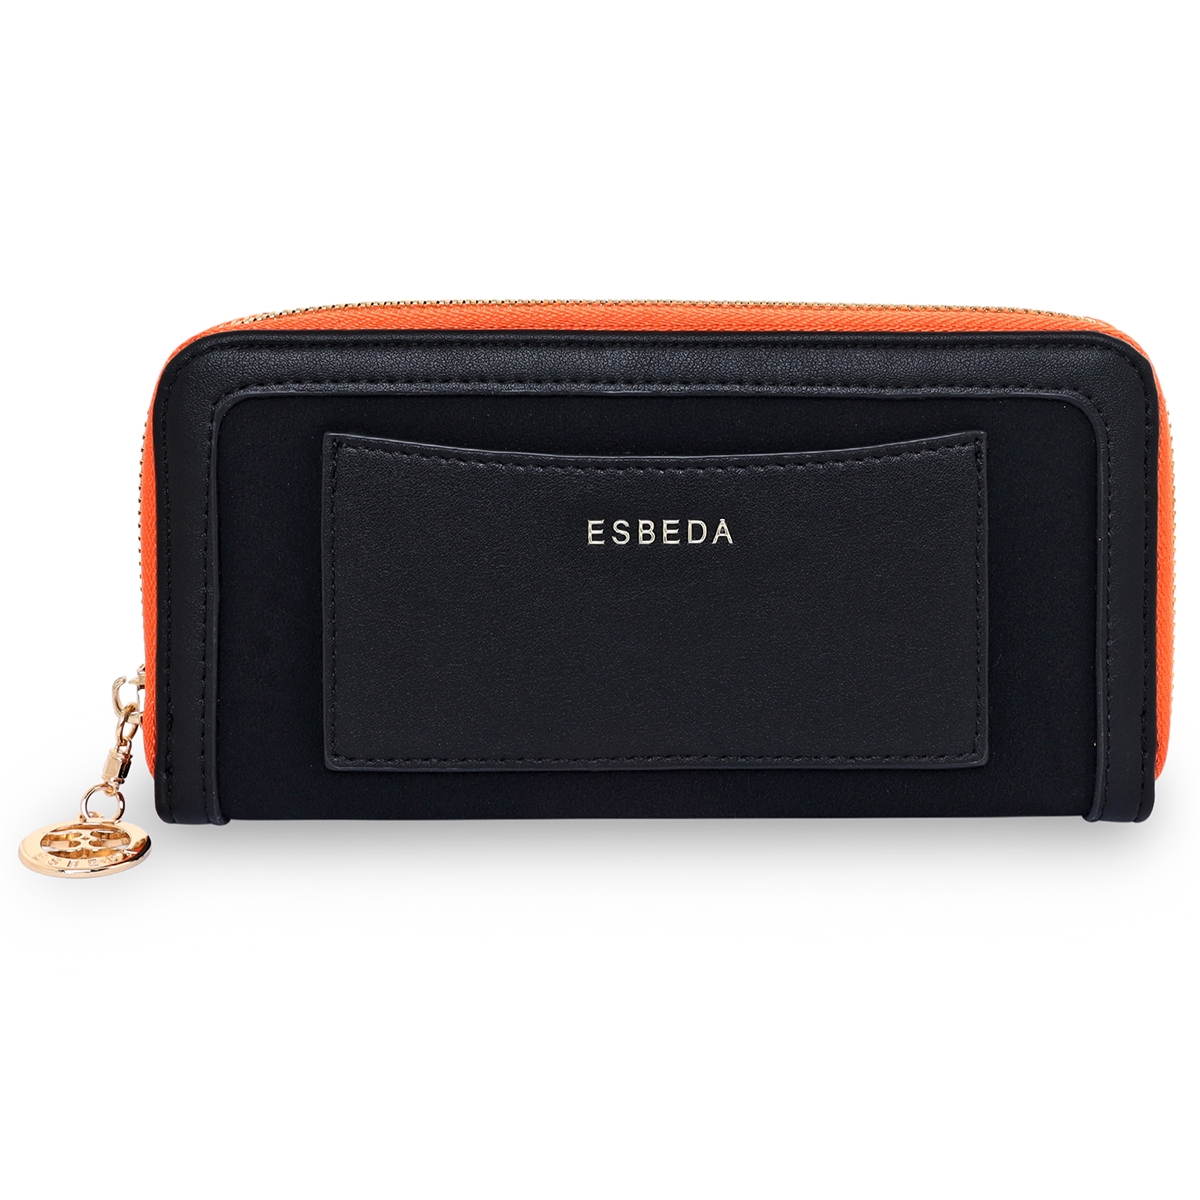 ESBEDA | ESBEDA Black Color Soft Suede Wallet For Women's- Large